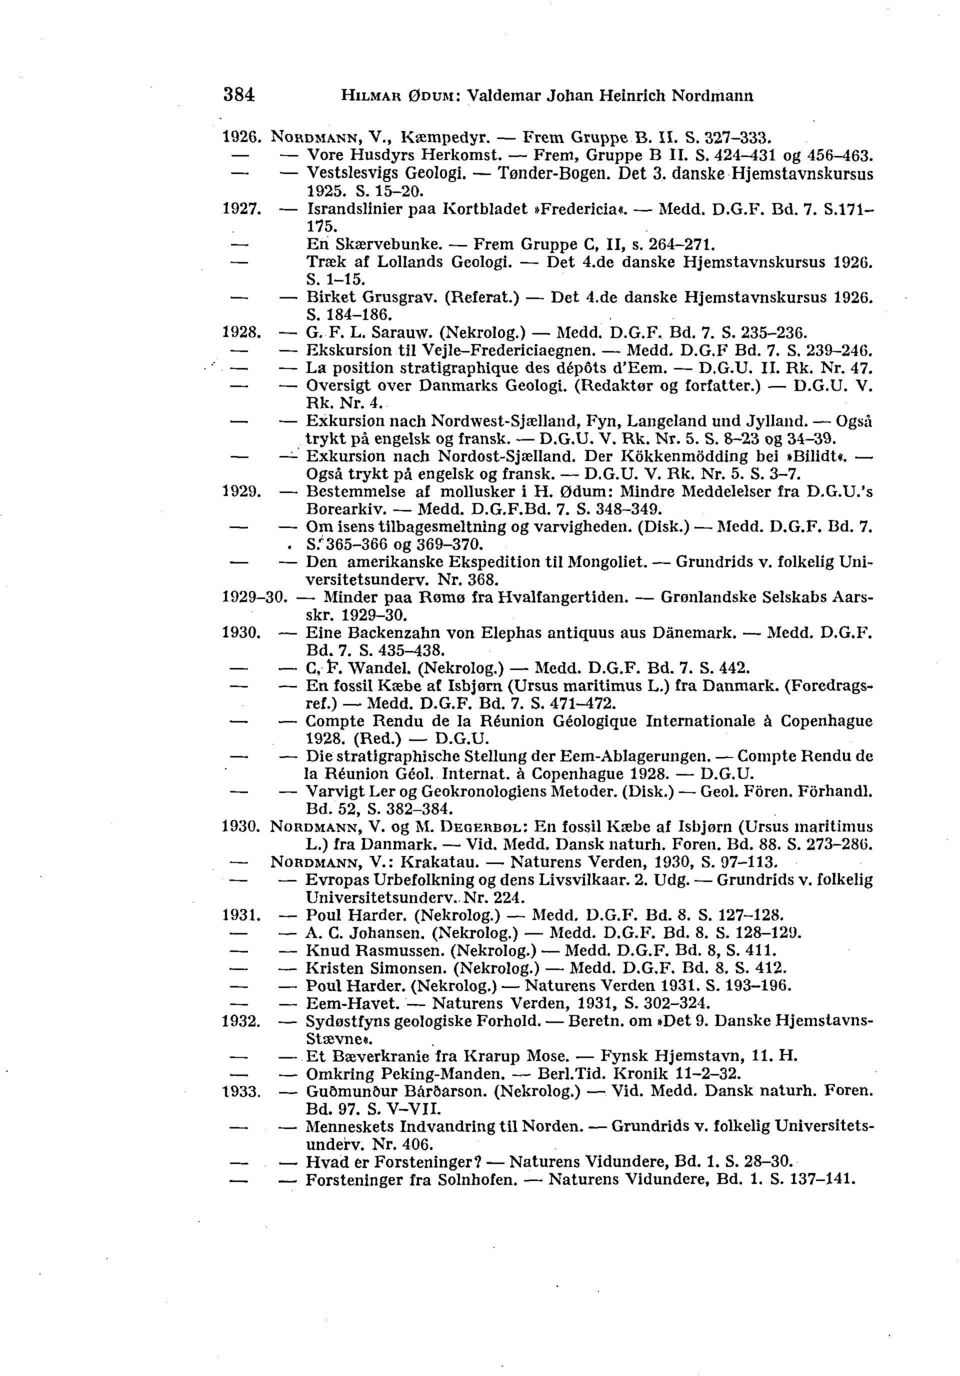 Træk af Lollands Geologi. Det 4.de danske Hjemstavnskursus 1926. S. 1-15. Birket Grusgrav. (Referat.) Det 4.de danske Hjemstavnskursus 1926. S. 184-186. 1928. G.-F. L. Sarauw. (Nekrolog.) Medd. D.G.F. Bd.